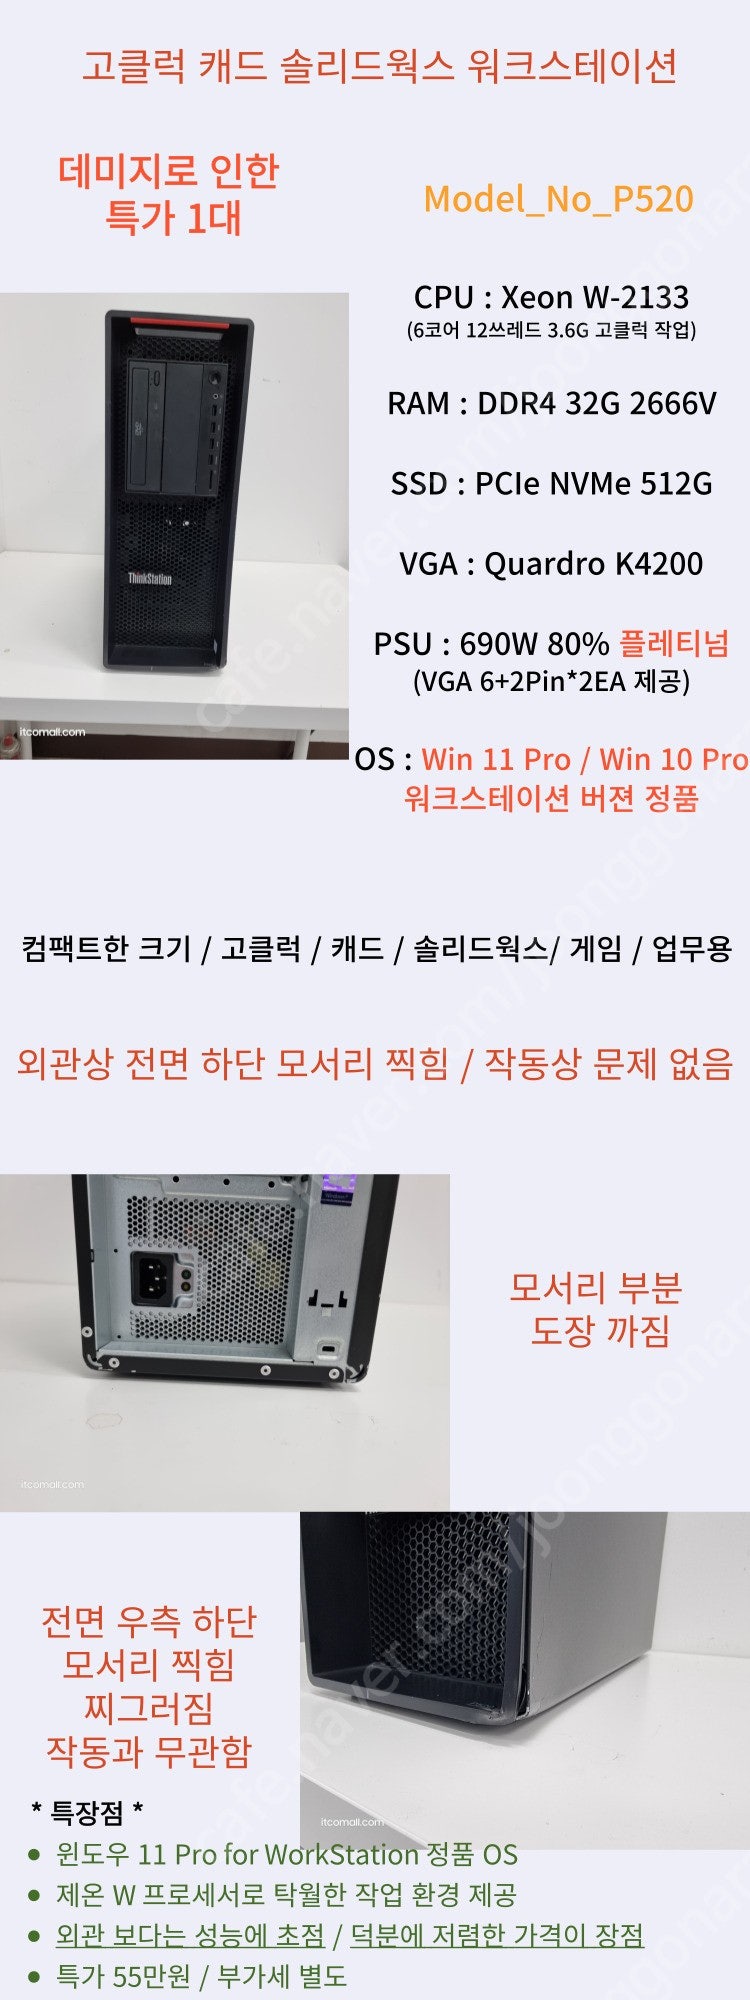 [026] 캐드 솔리드웍스 업무용 워크스테이션 레노버 P520 외관하자특가